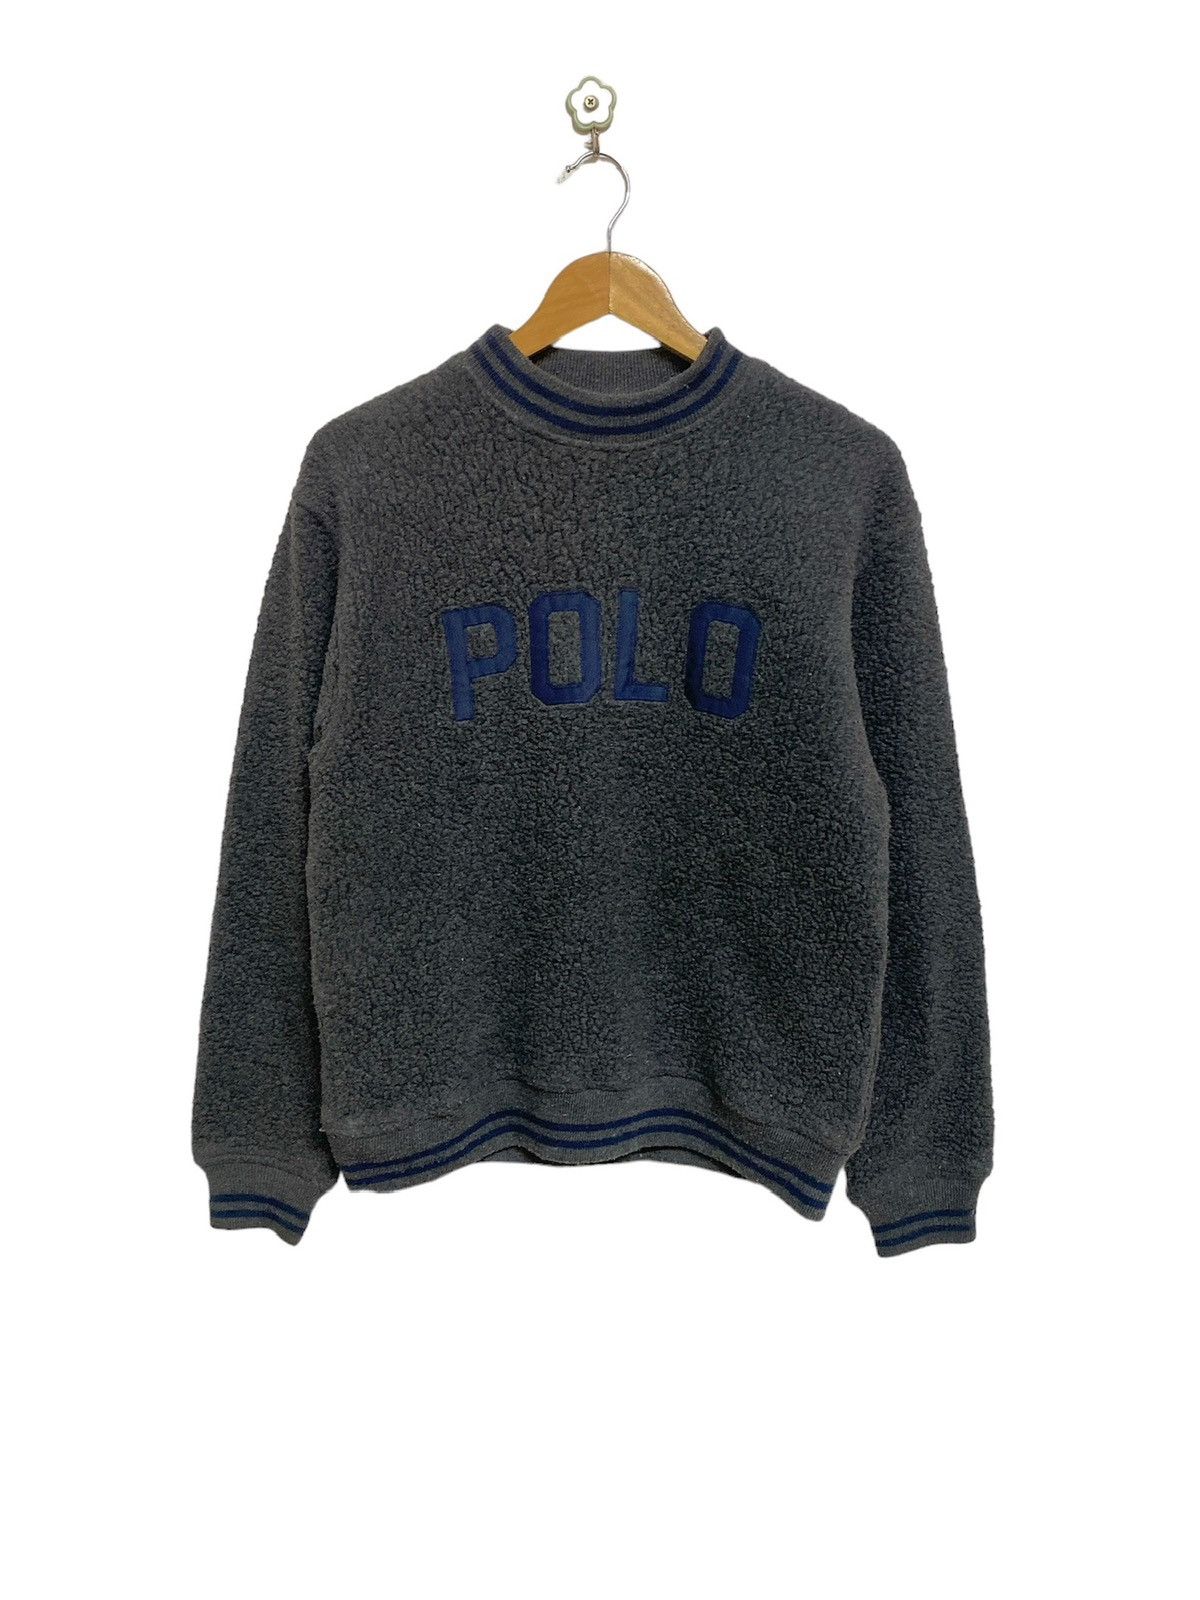 Vintage Polo Ralph Lauren Gray Fleece Spellout Sweatshirt - 1